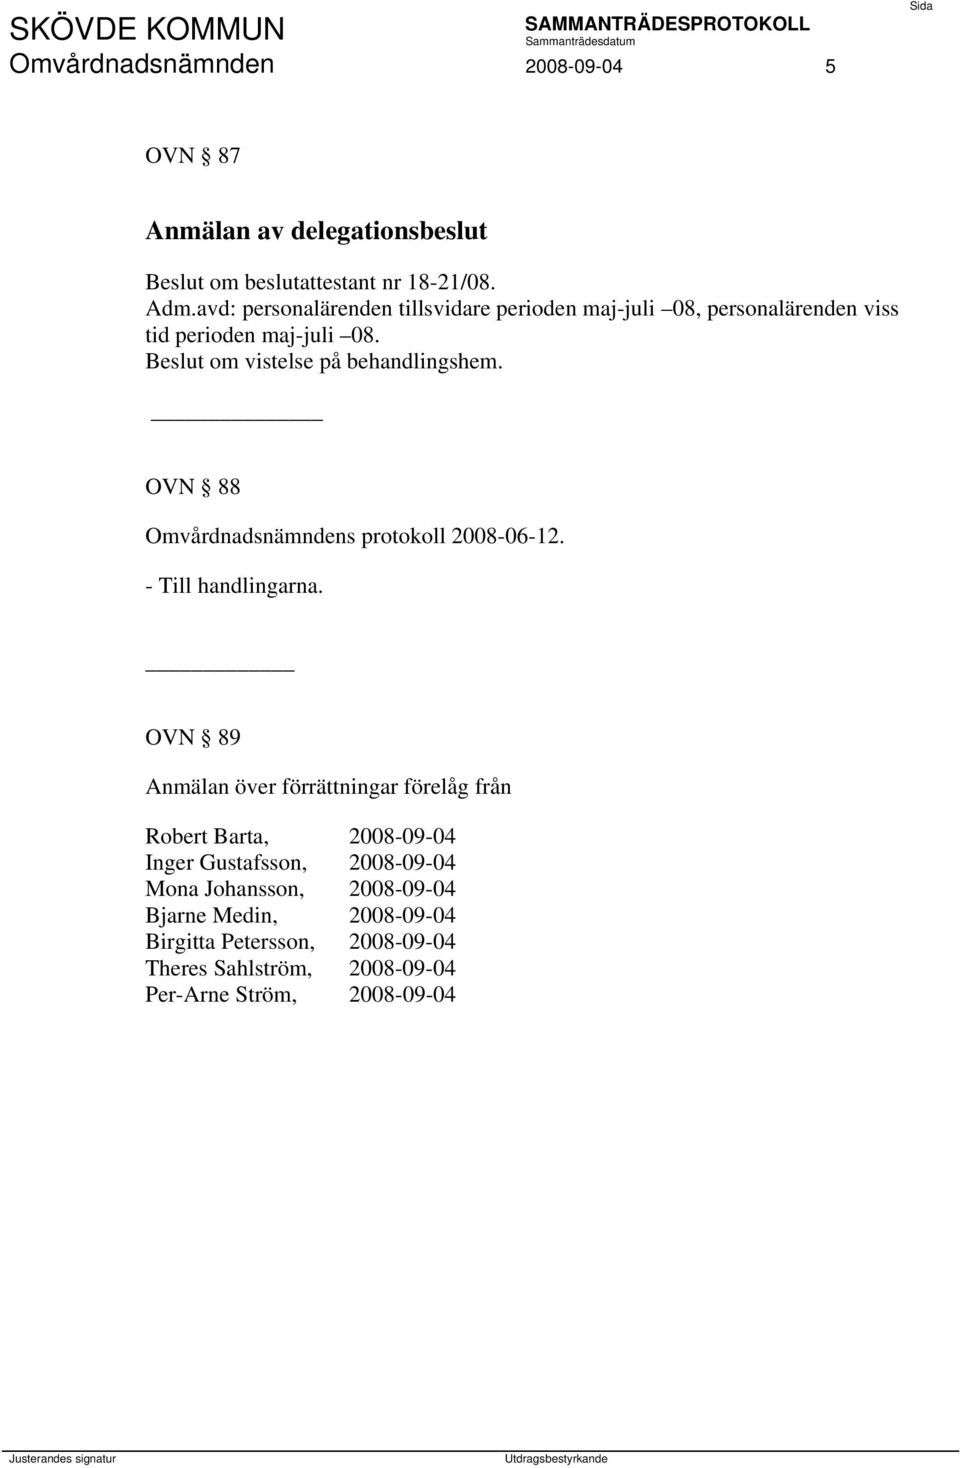 OVN 88 Omvårdnadsnämndens protokoll 2008-06-12. - Till handlingarna.